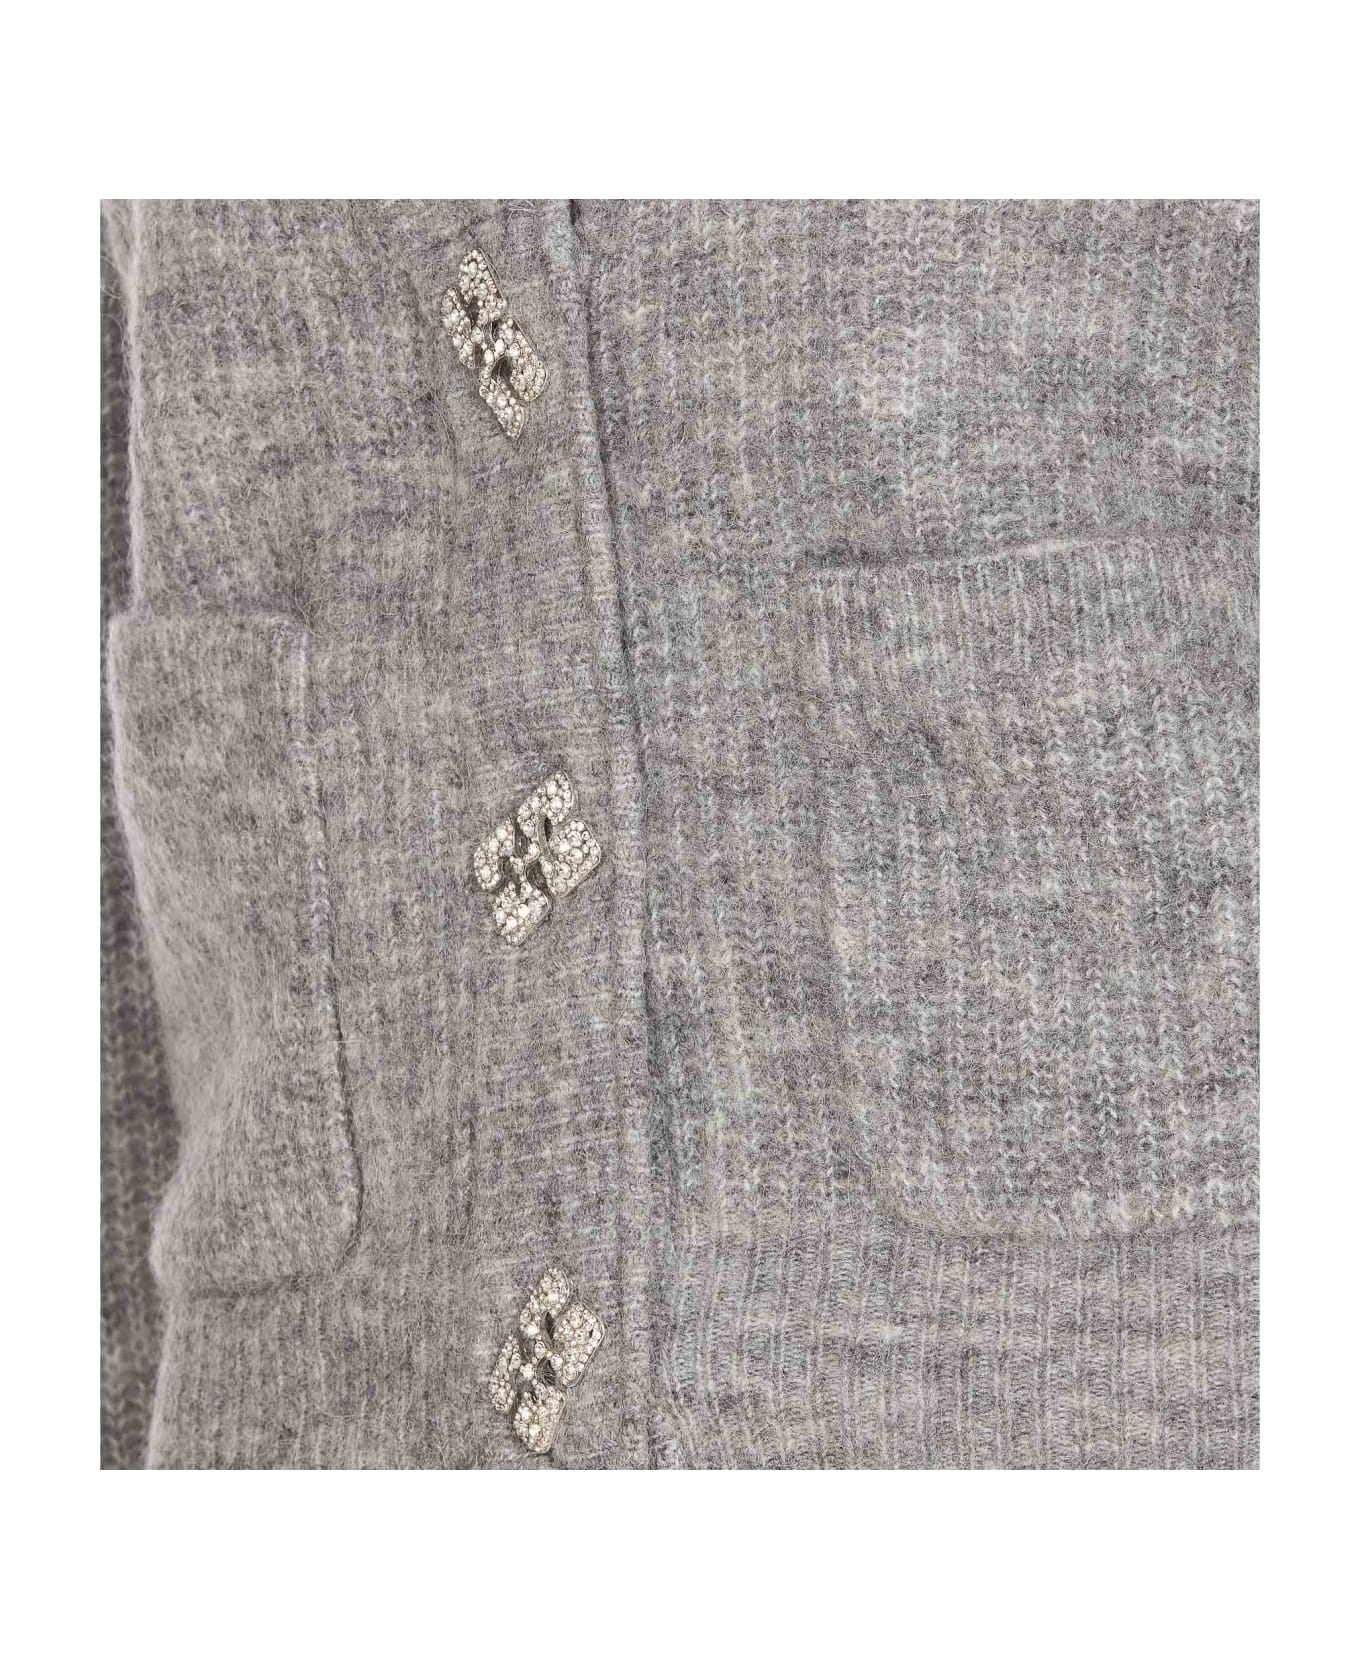 Ganni Grey Soft Wool Cardigan - Grey